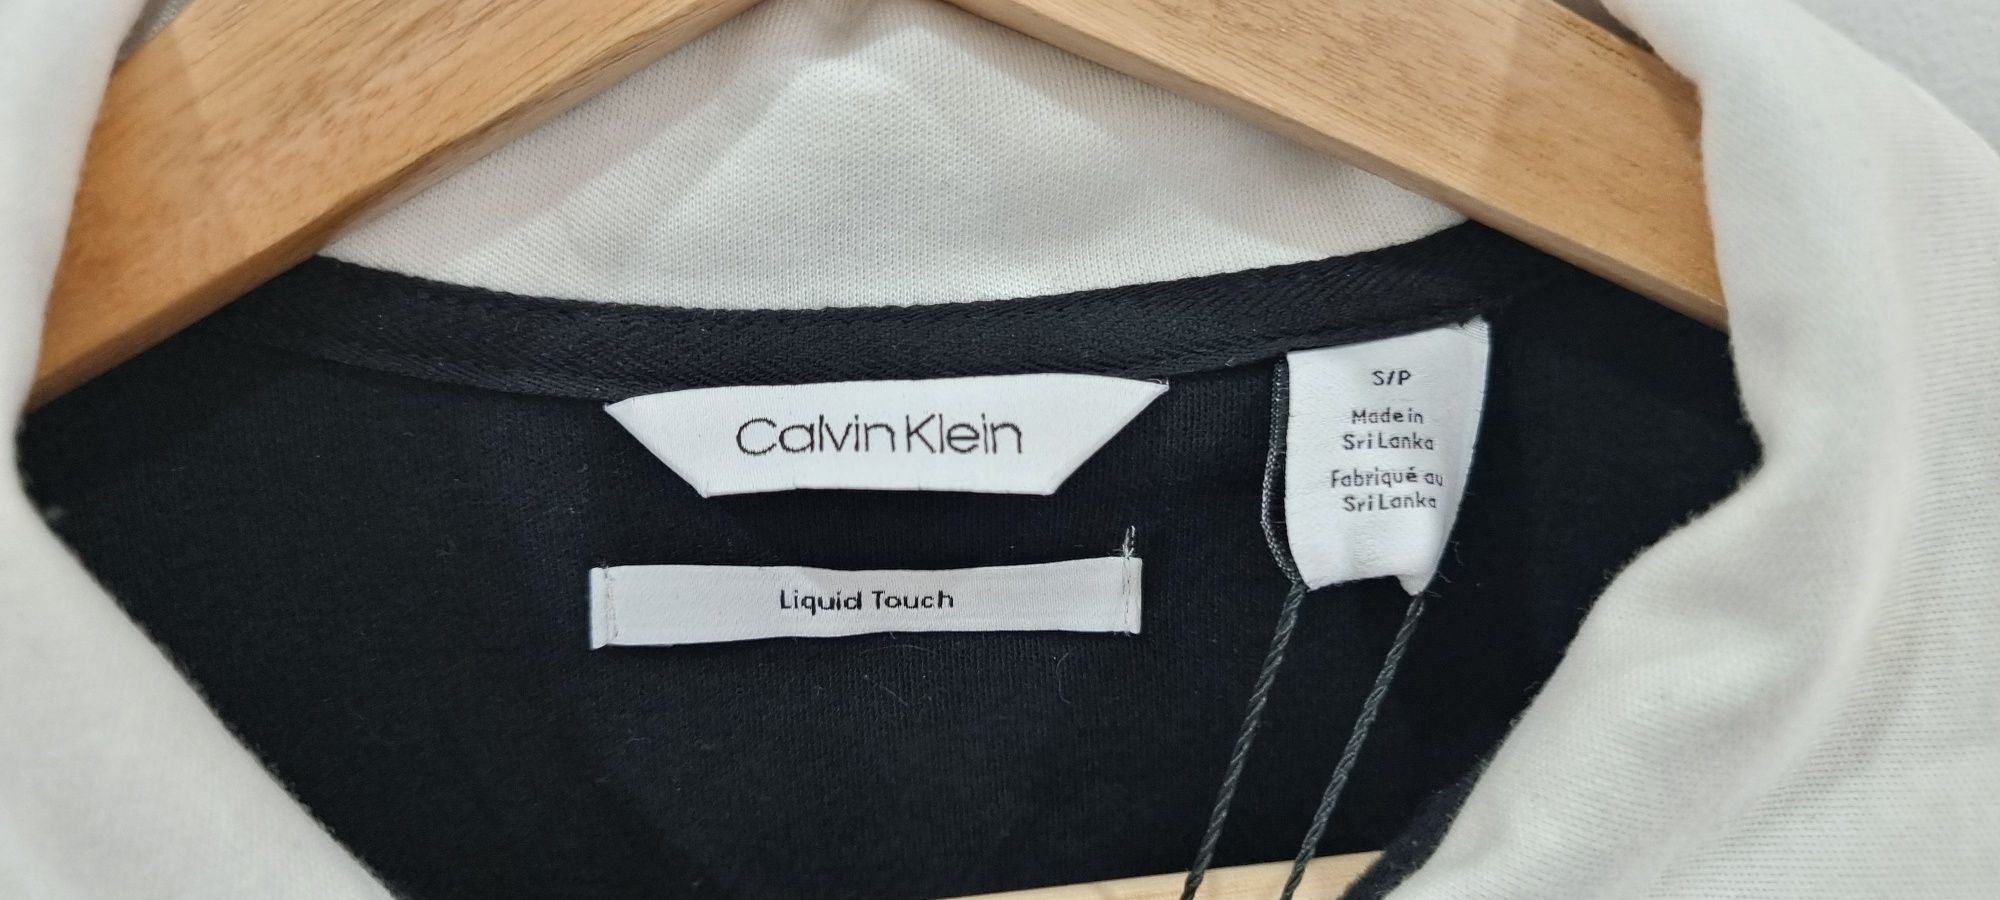 Polo Calvin Klein Perto  - Tam. S